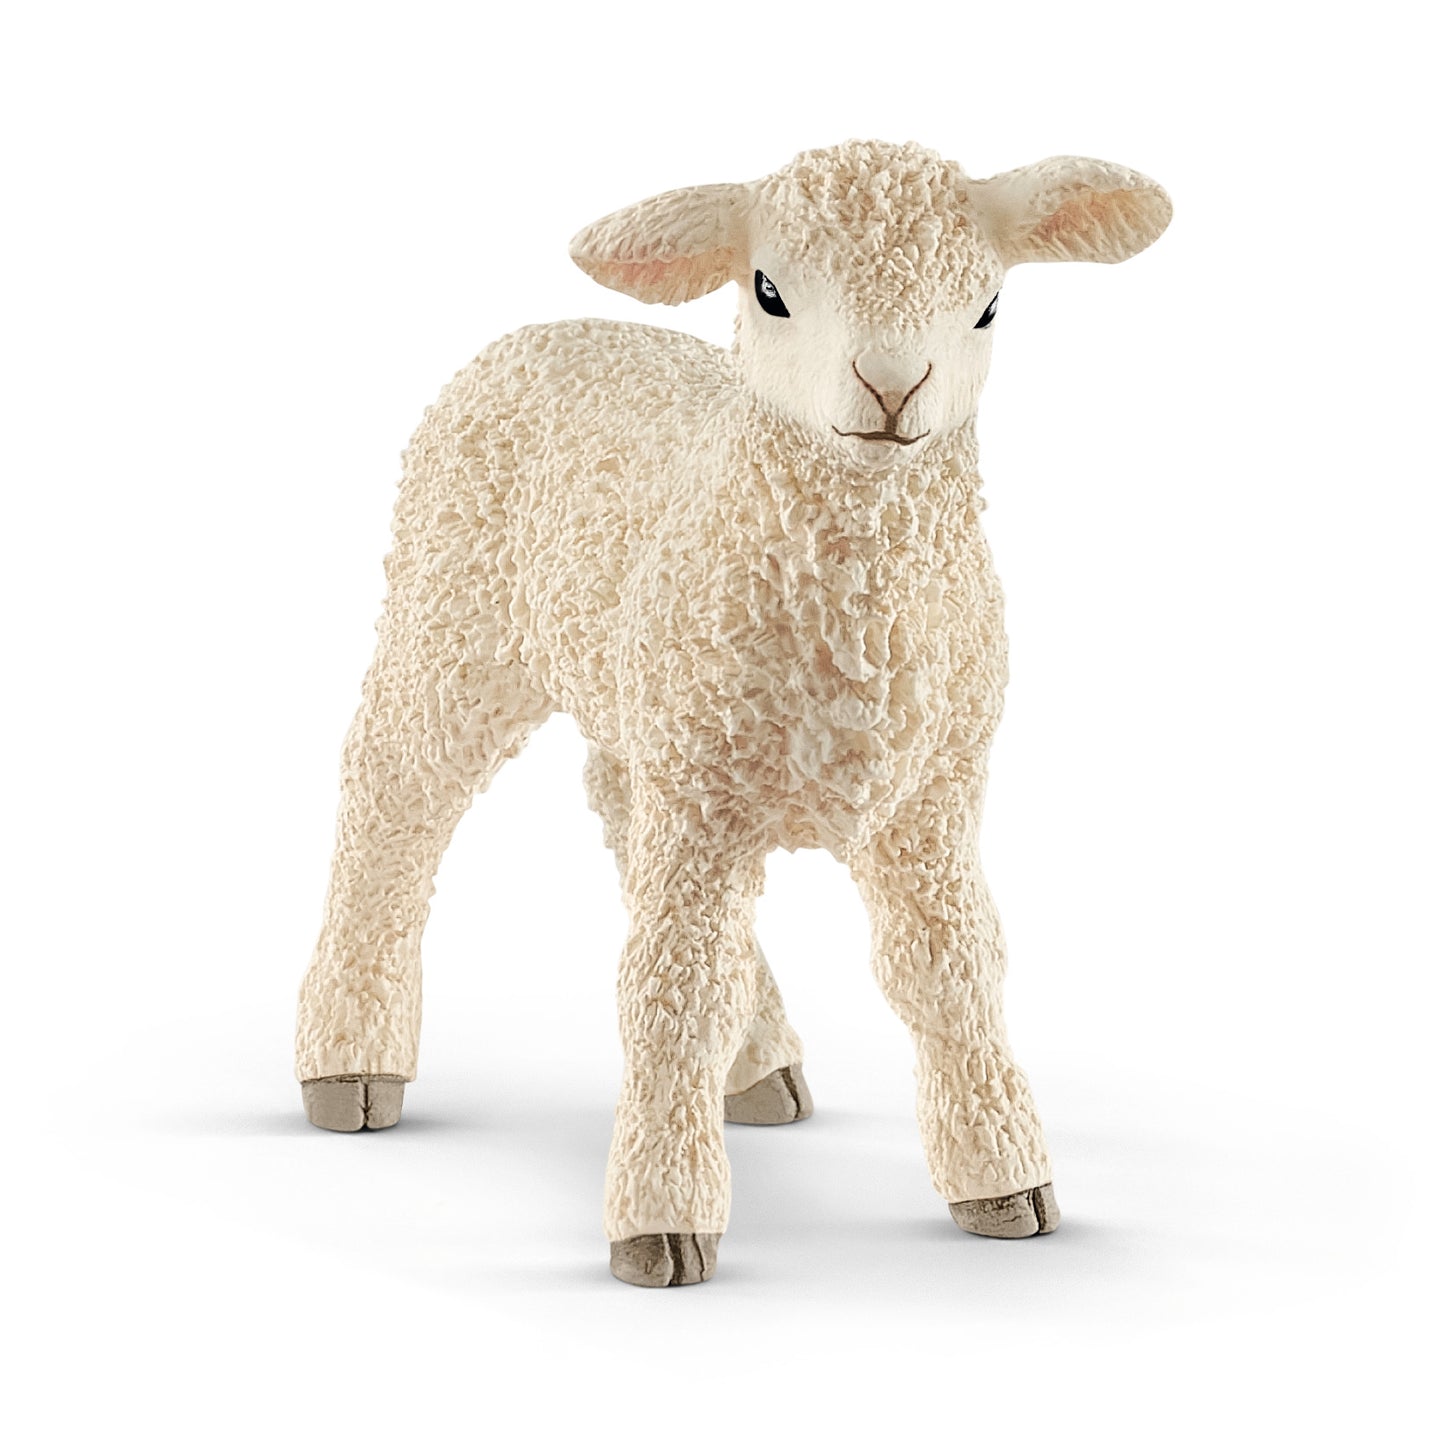 Lamb 2" Figure